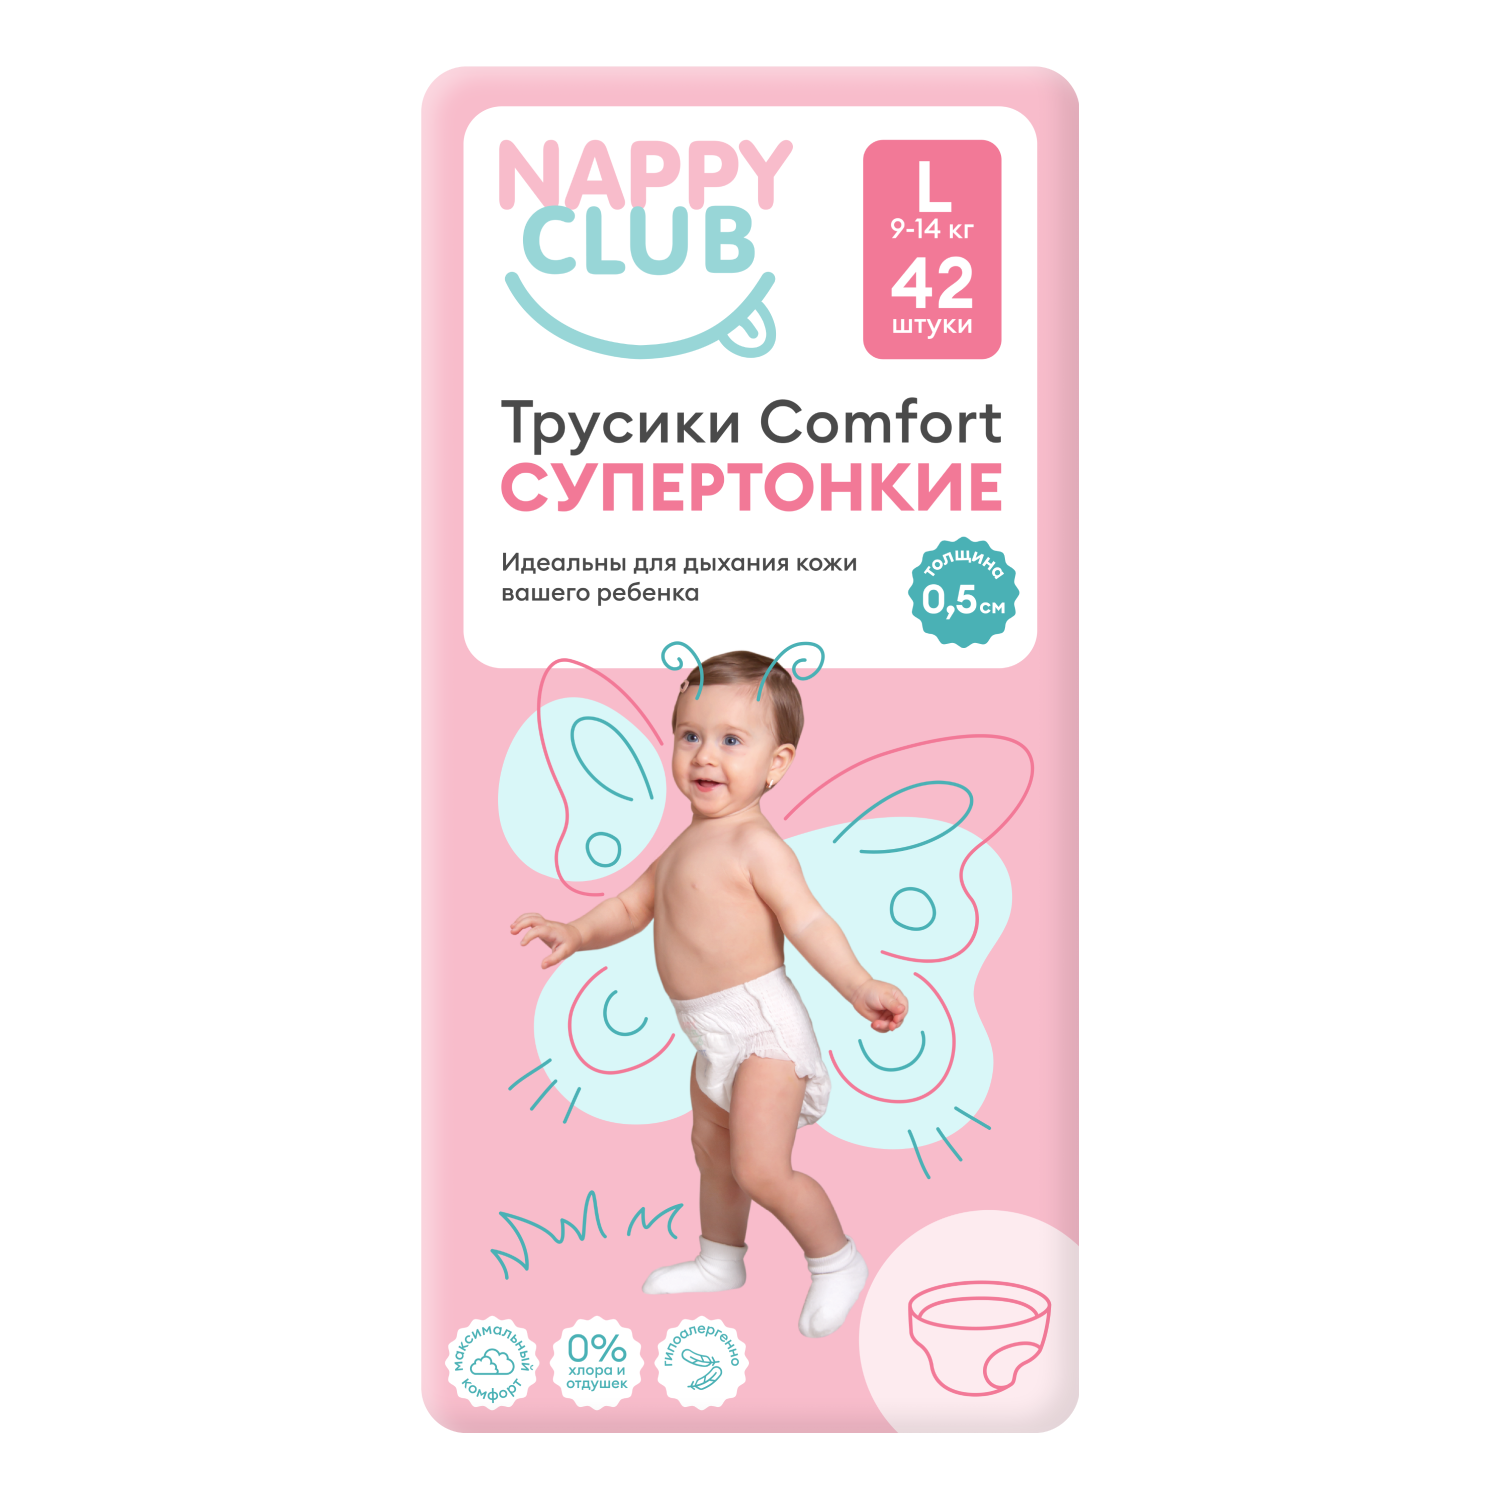 NappyClub трусики Comfort дневные супер-тонкие L (9-14 кг) 42 шт. nappyclub трусики comfort xl 12 20 кг 38 шт